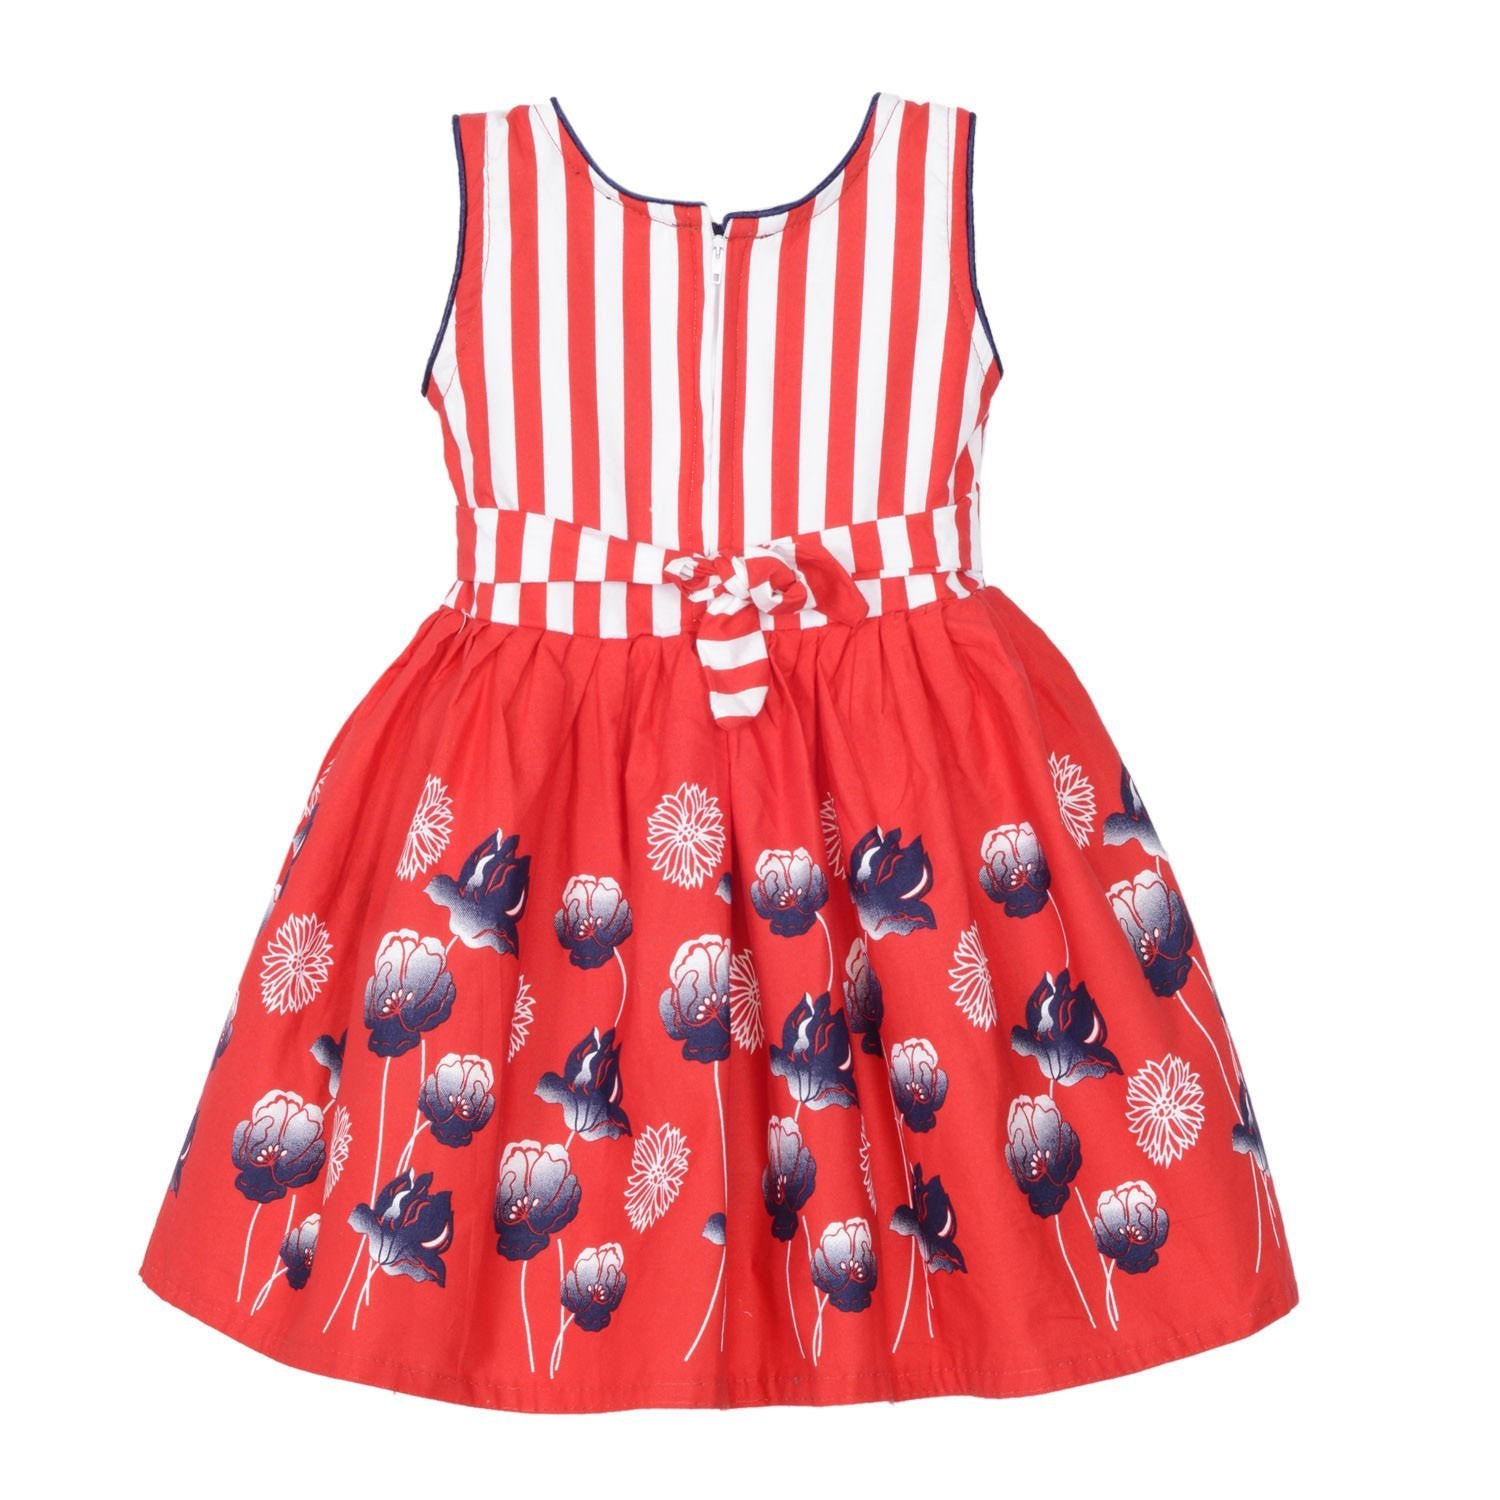 Baby Girls Party Wear Frock Dress ctn259rd - Wish Karo Cotton Wear - frocks Cotton Wear - baby dress